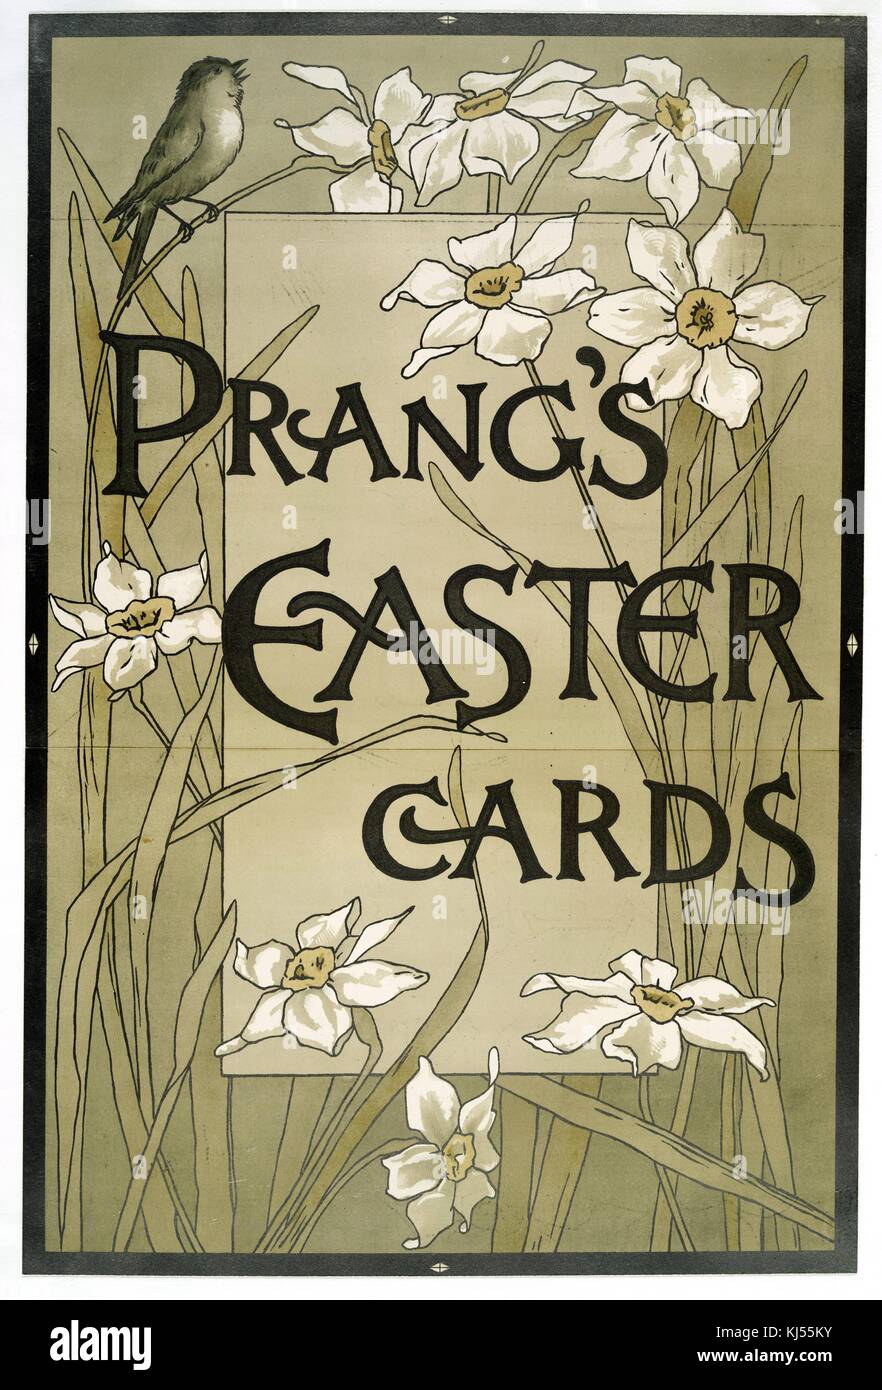 Chromolithograph-Posterwerbung mit den Wörtern „Prangs Osterkarten“, die weiße Blumen und einen zwitschernden Vogel an der Spitze darstellen, 1900. Aus der New York Public Library. Stockfoto